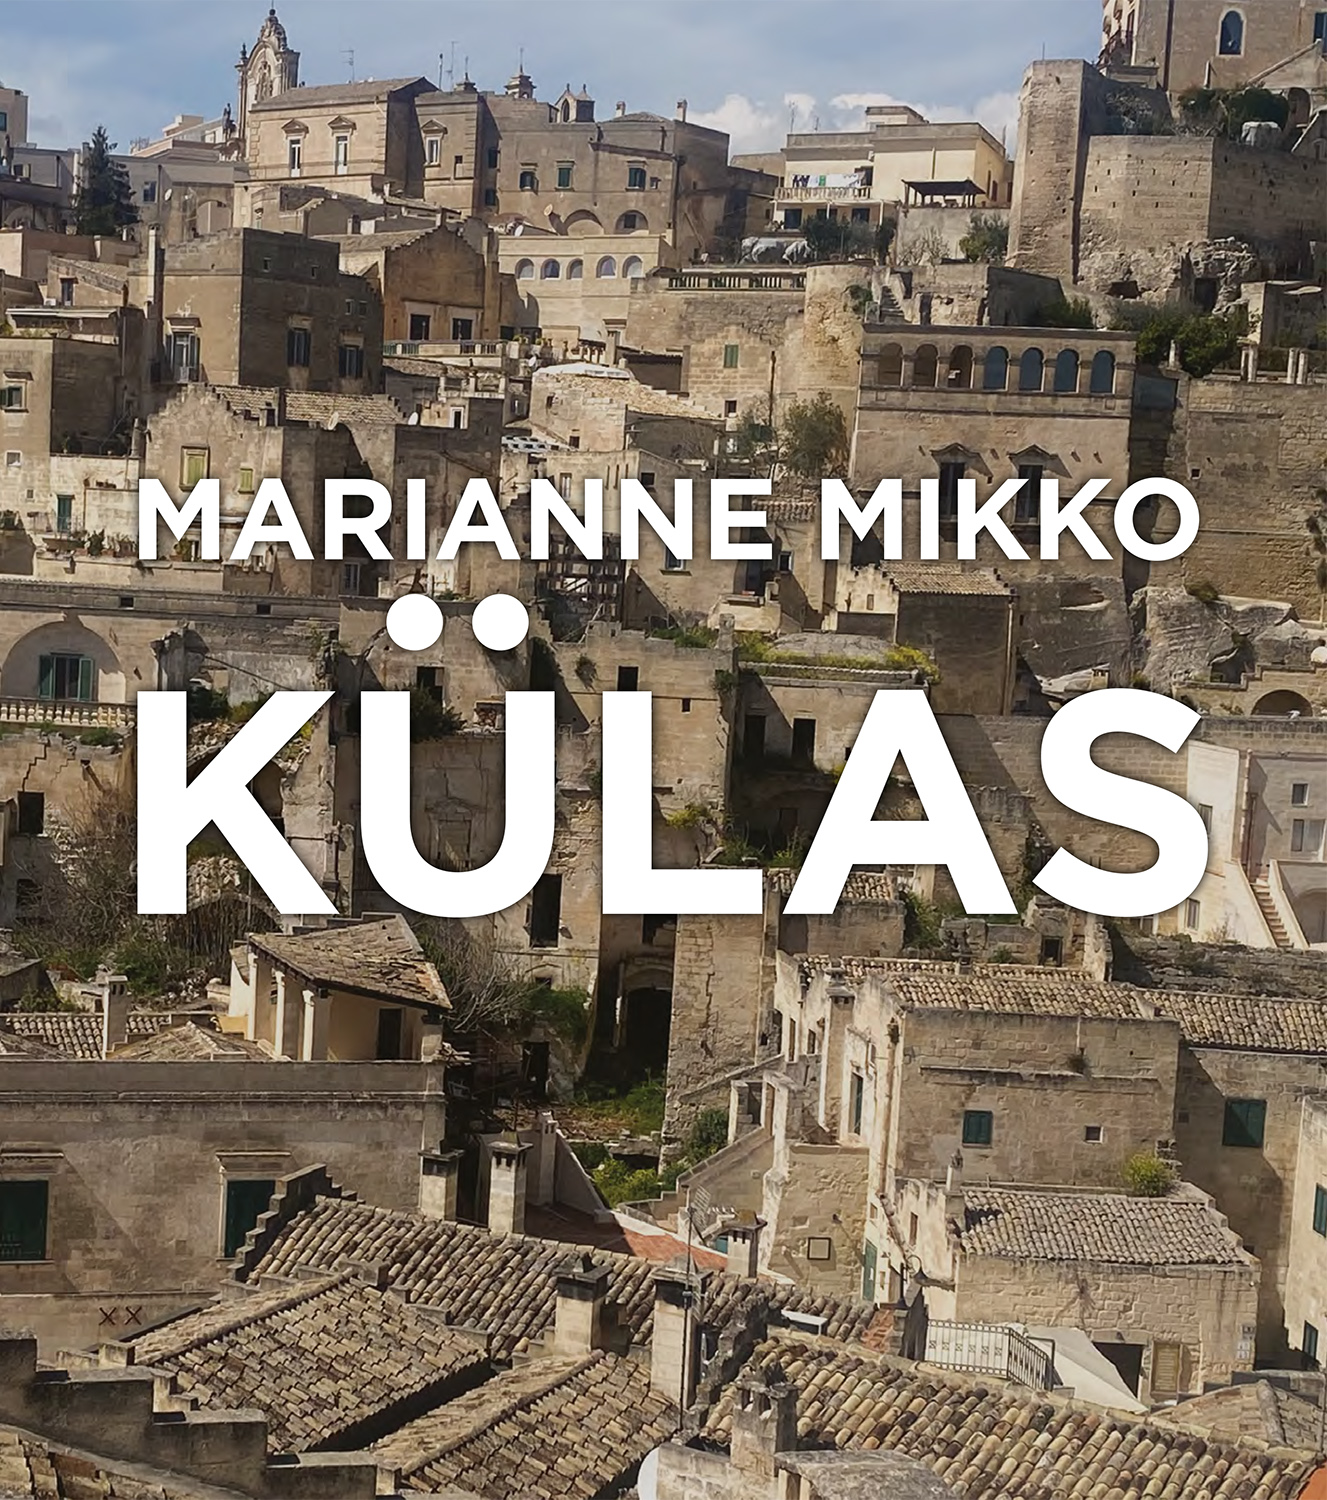 Go Reisiraamatu kirjastuselt ilmus Marianne Mikko reisiraamat “Külas”